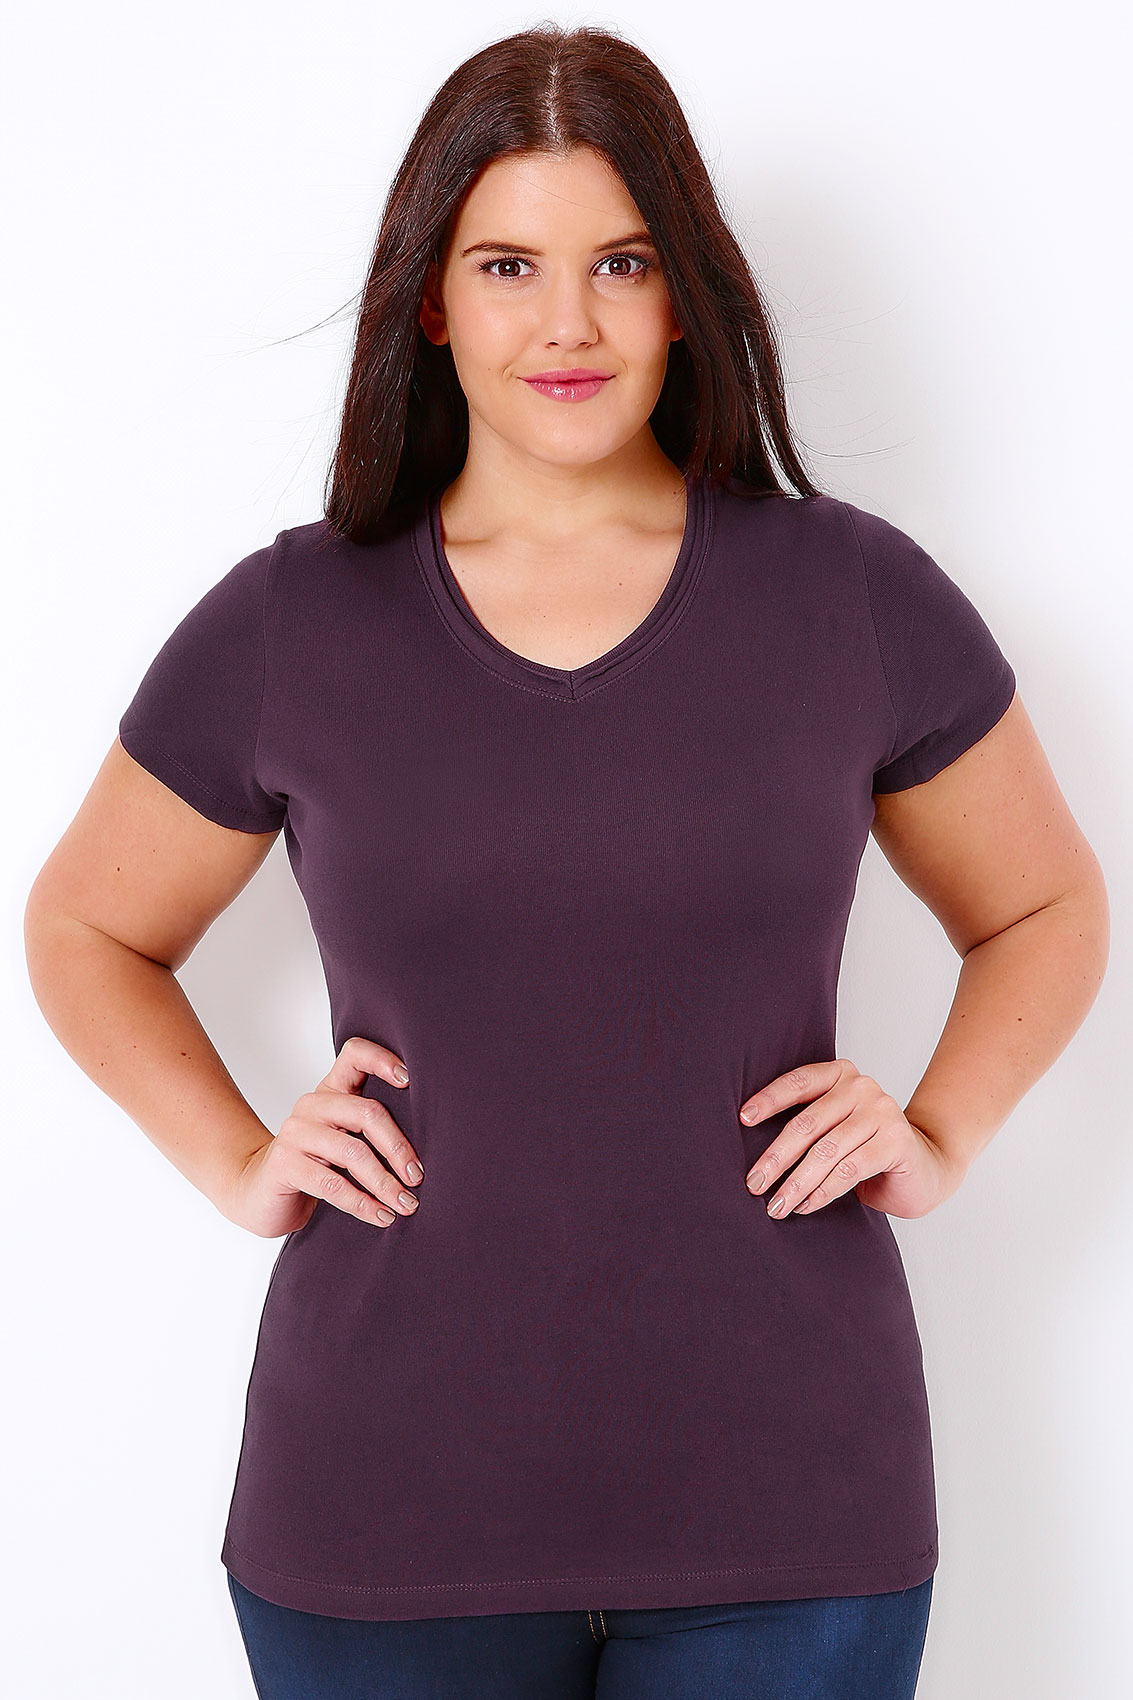 Purple Short Sleeved V Neck Basic T Shirt Plus Size 16 To 36